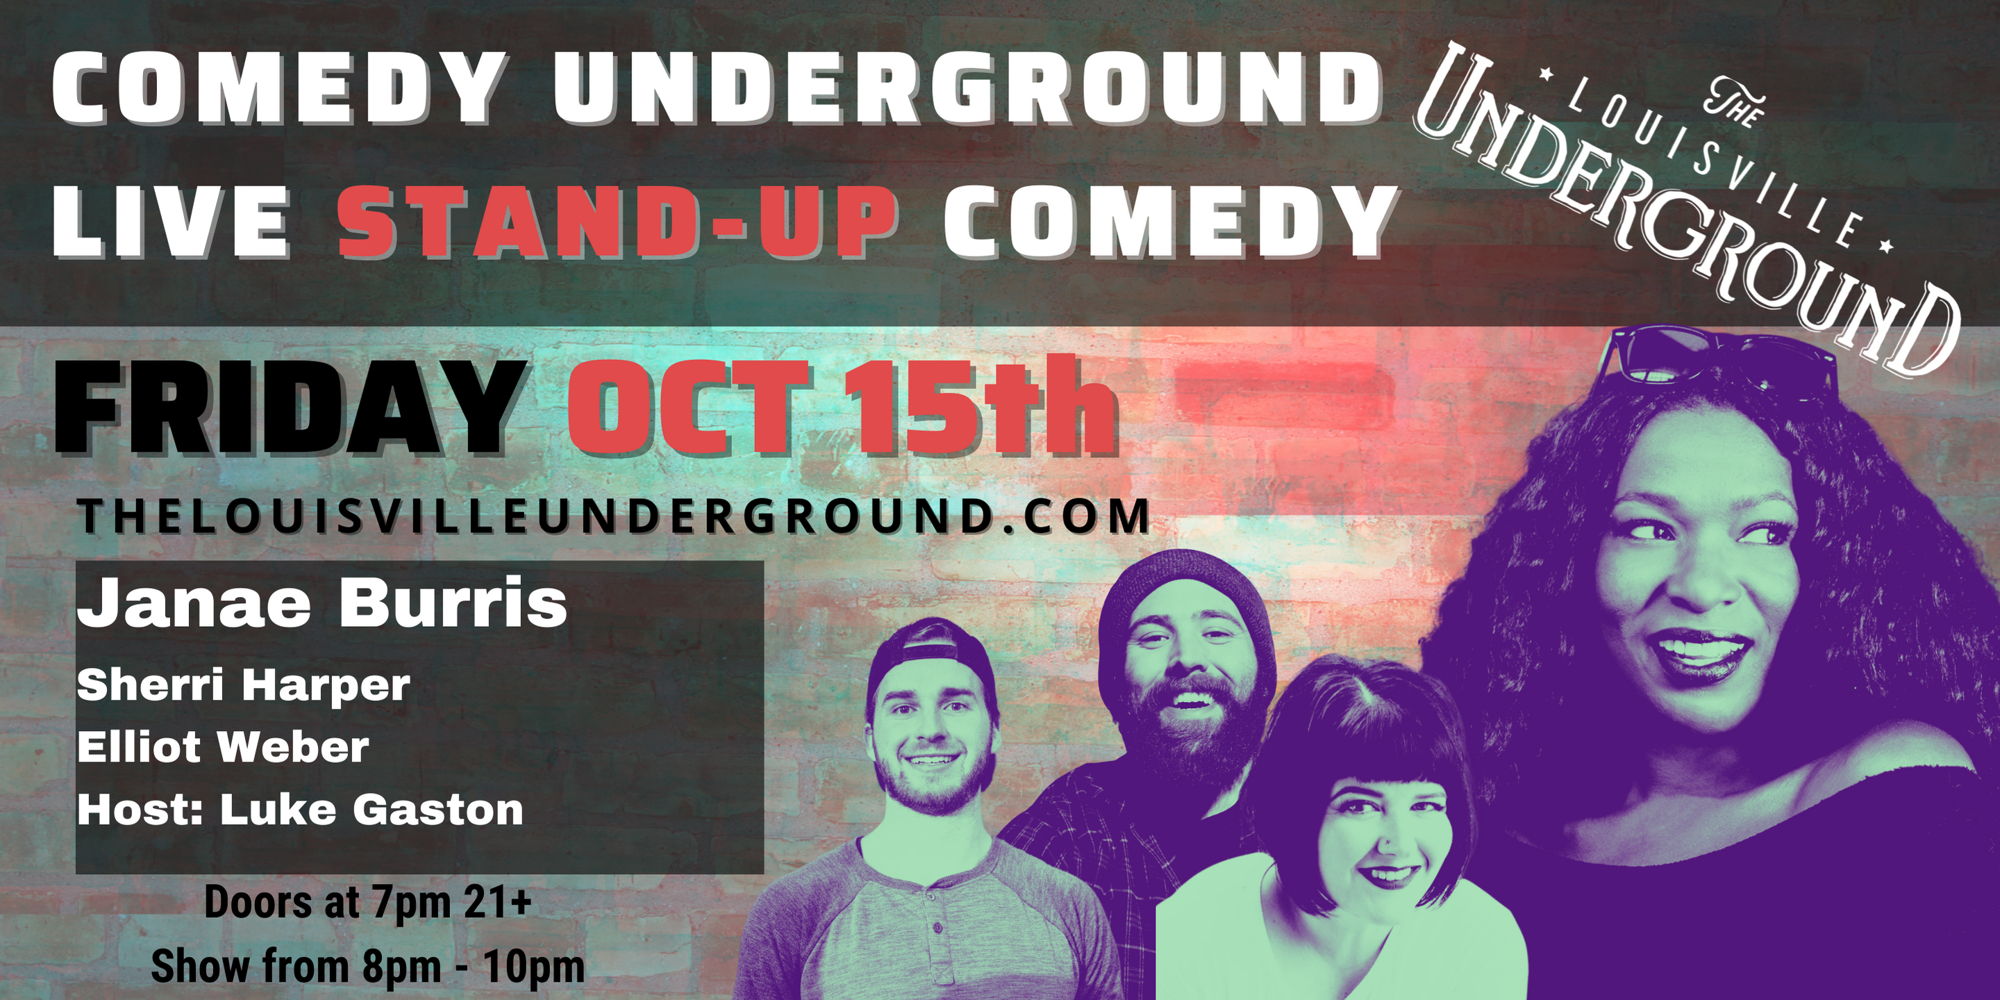 Comedy Underground with Host Luke Gaston promotional image